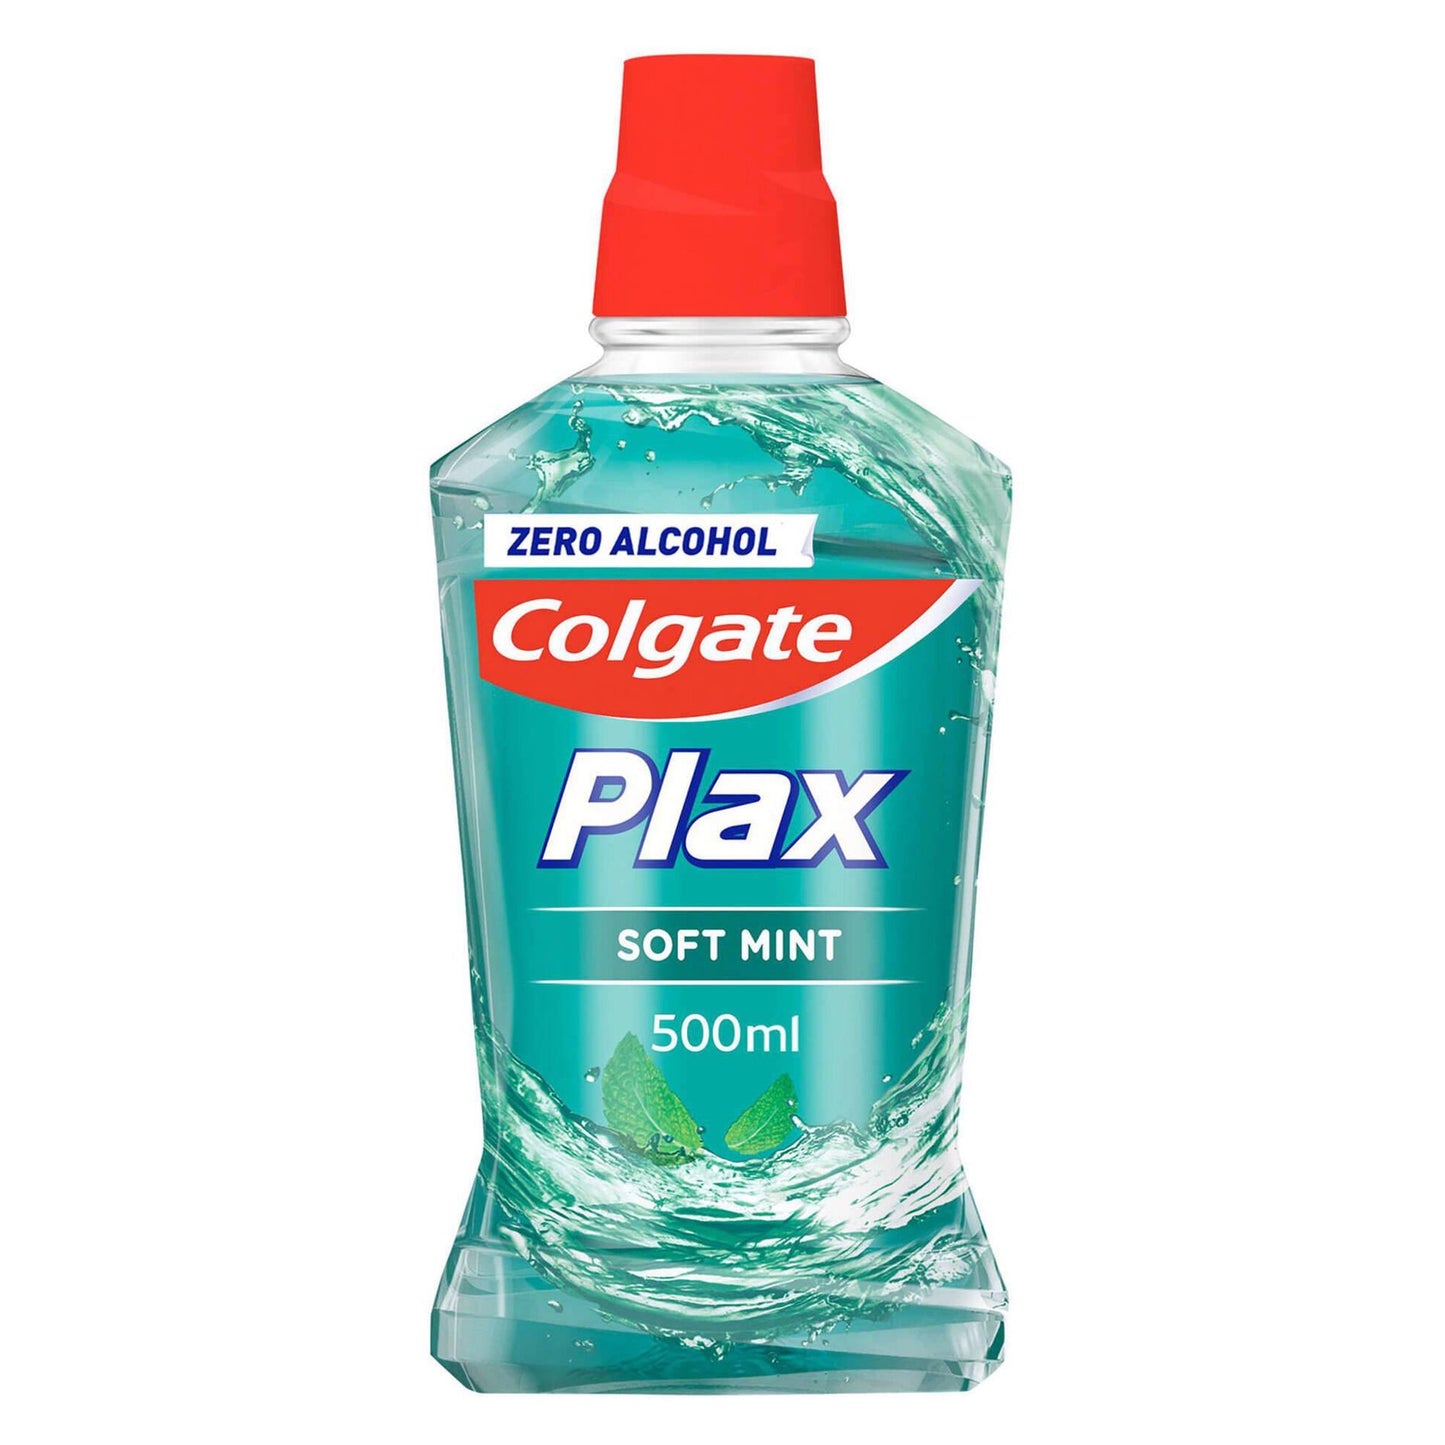 Plax Gentle Mint Mouthwash Colgate 500 ml